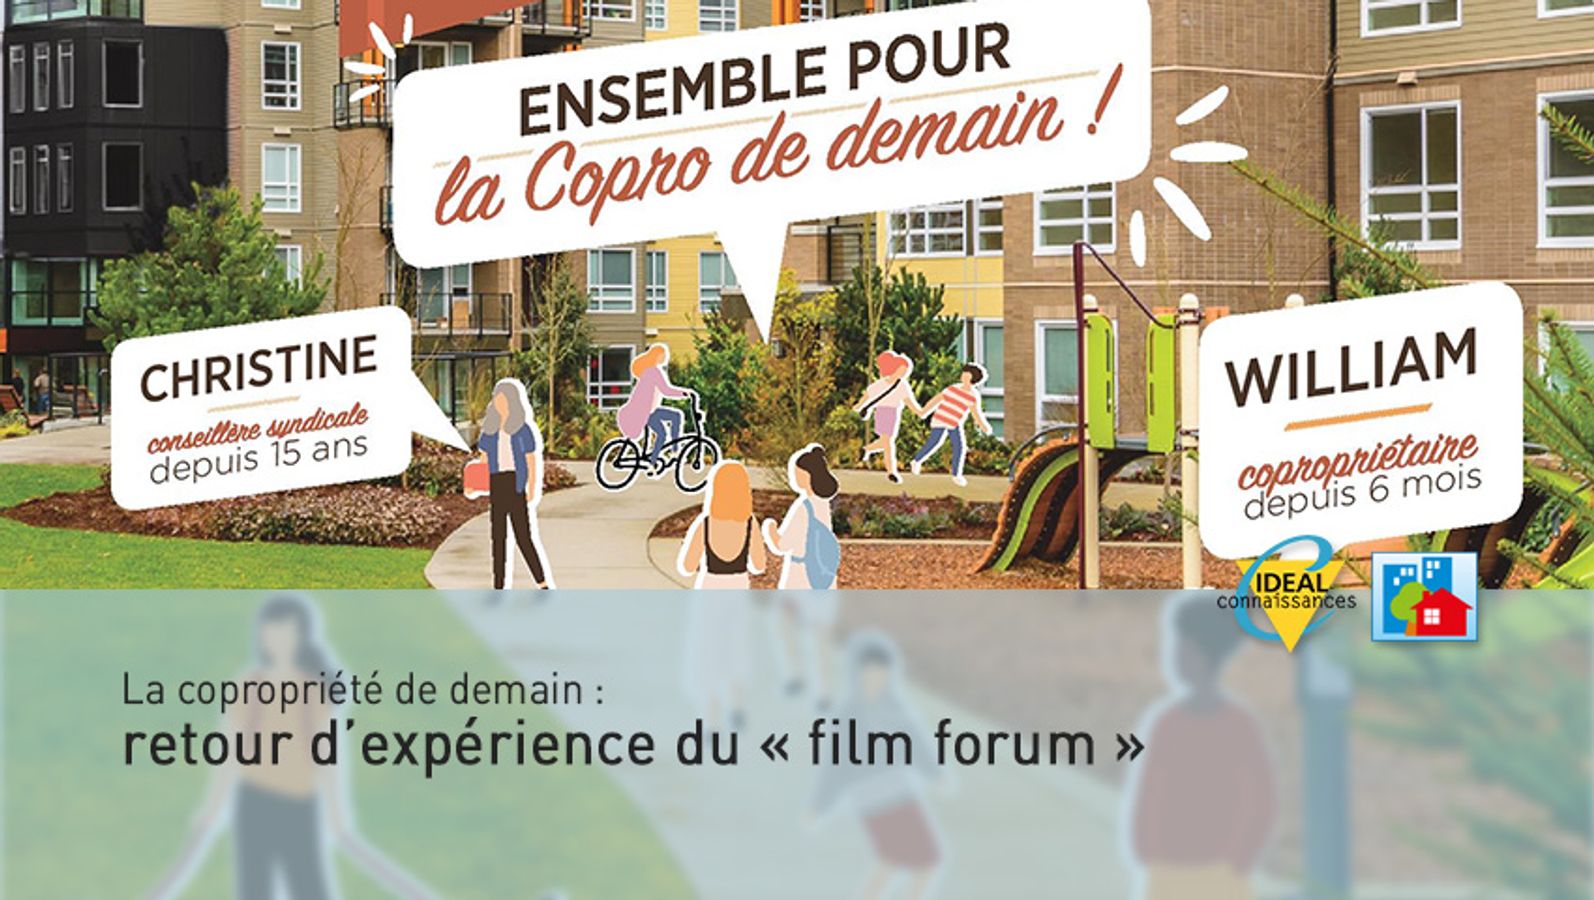 La copropriété de demain : Retour d'expérience du "film forum" | Creil Sud Oise